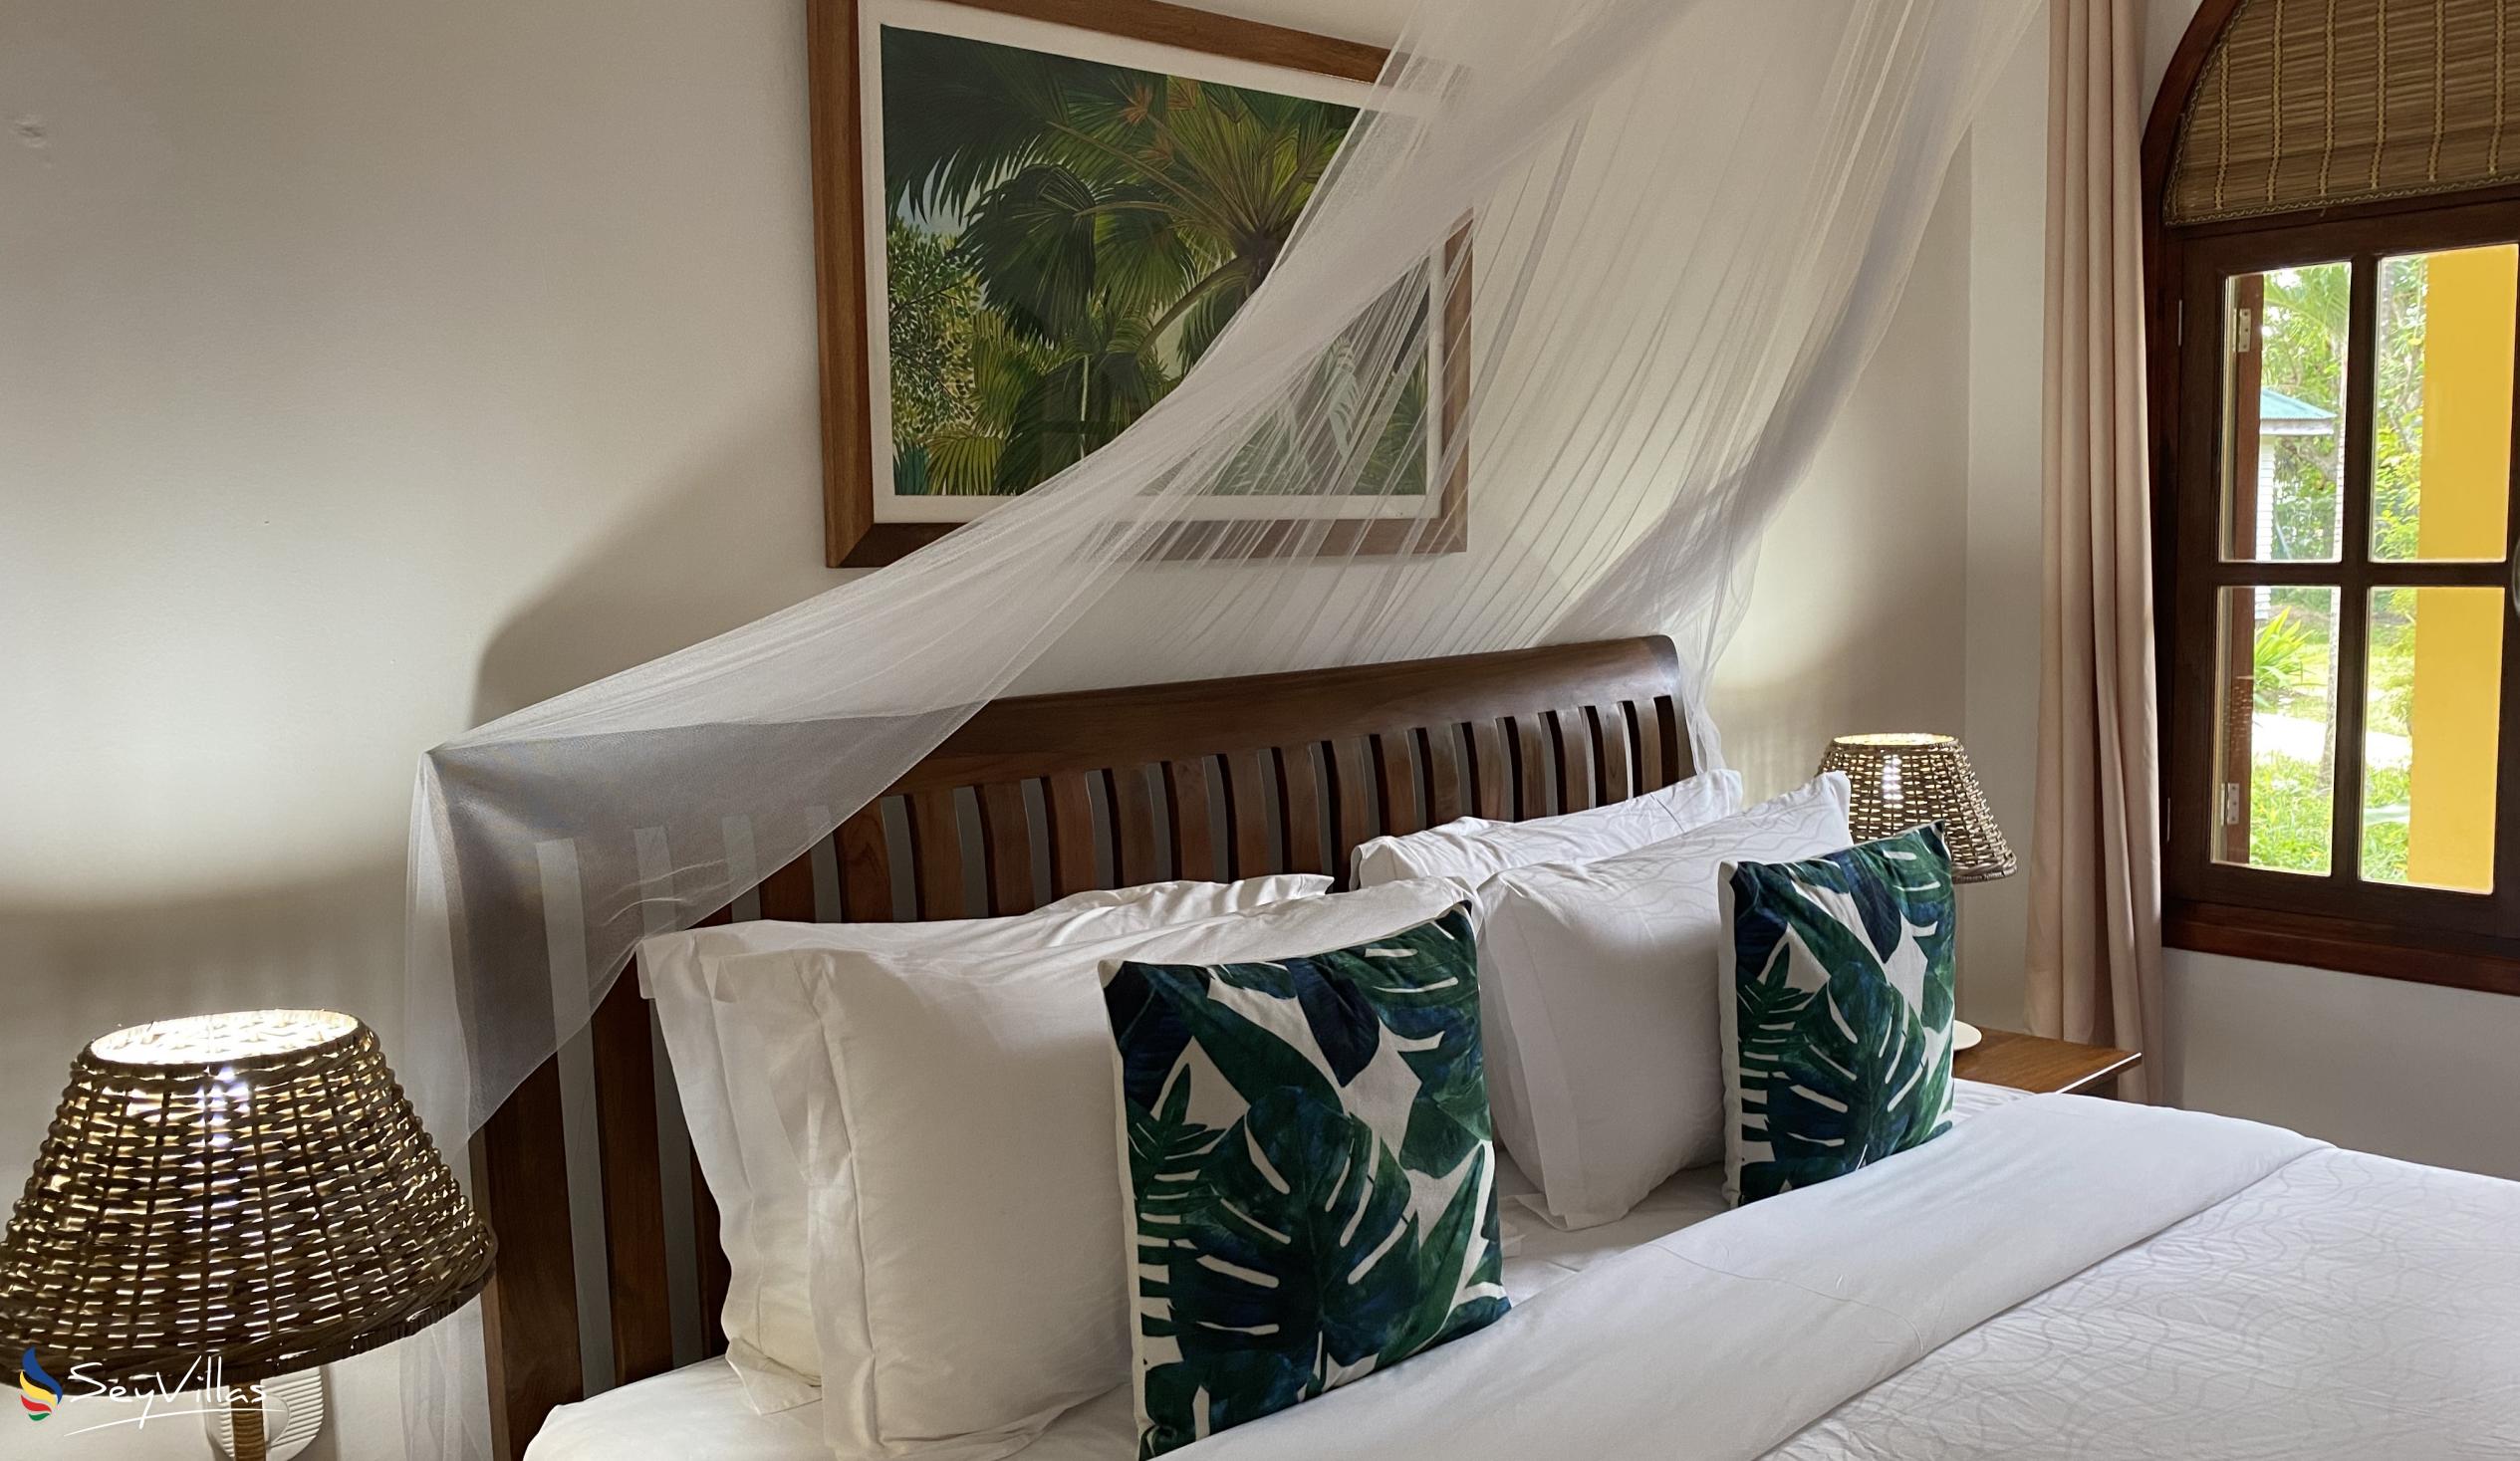 Foto 53: Castello Beach Hotel - Junior Suite - Praslin (Seychellen)